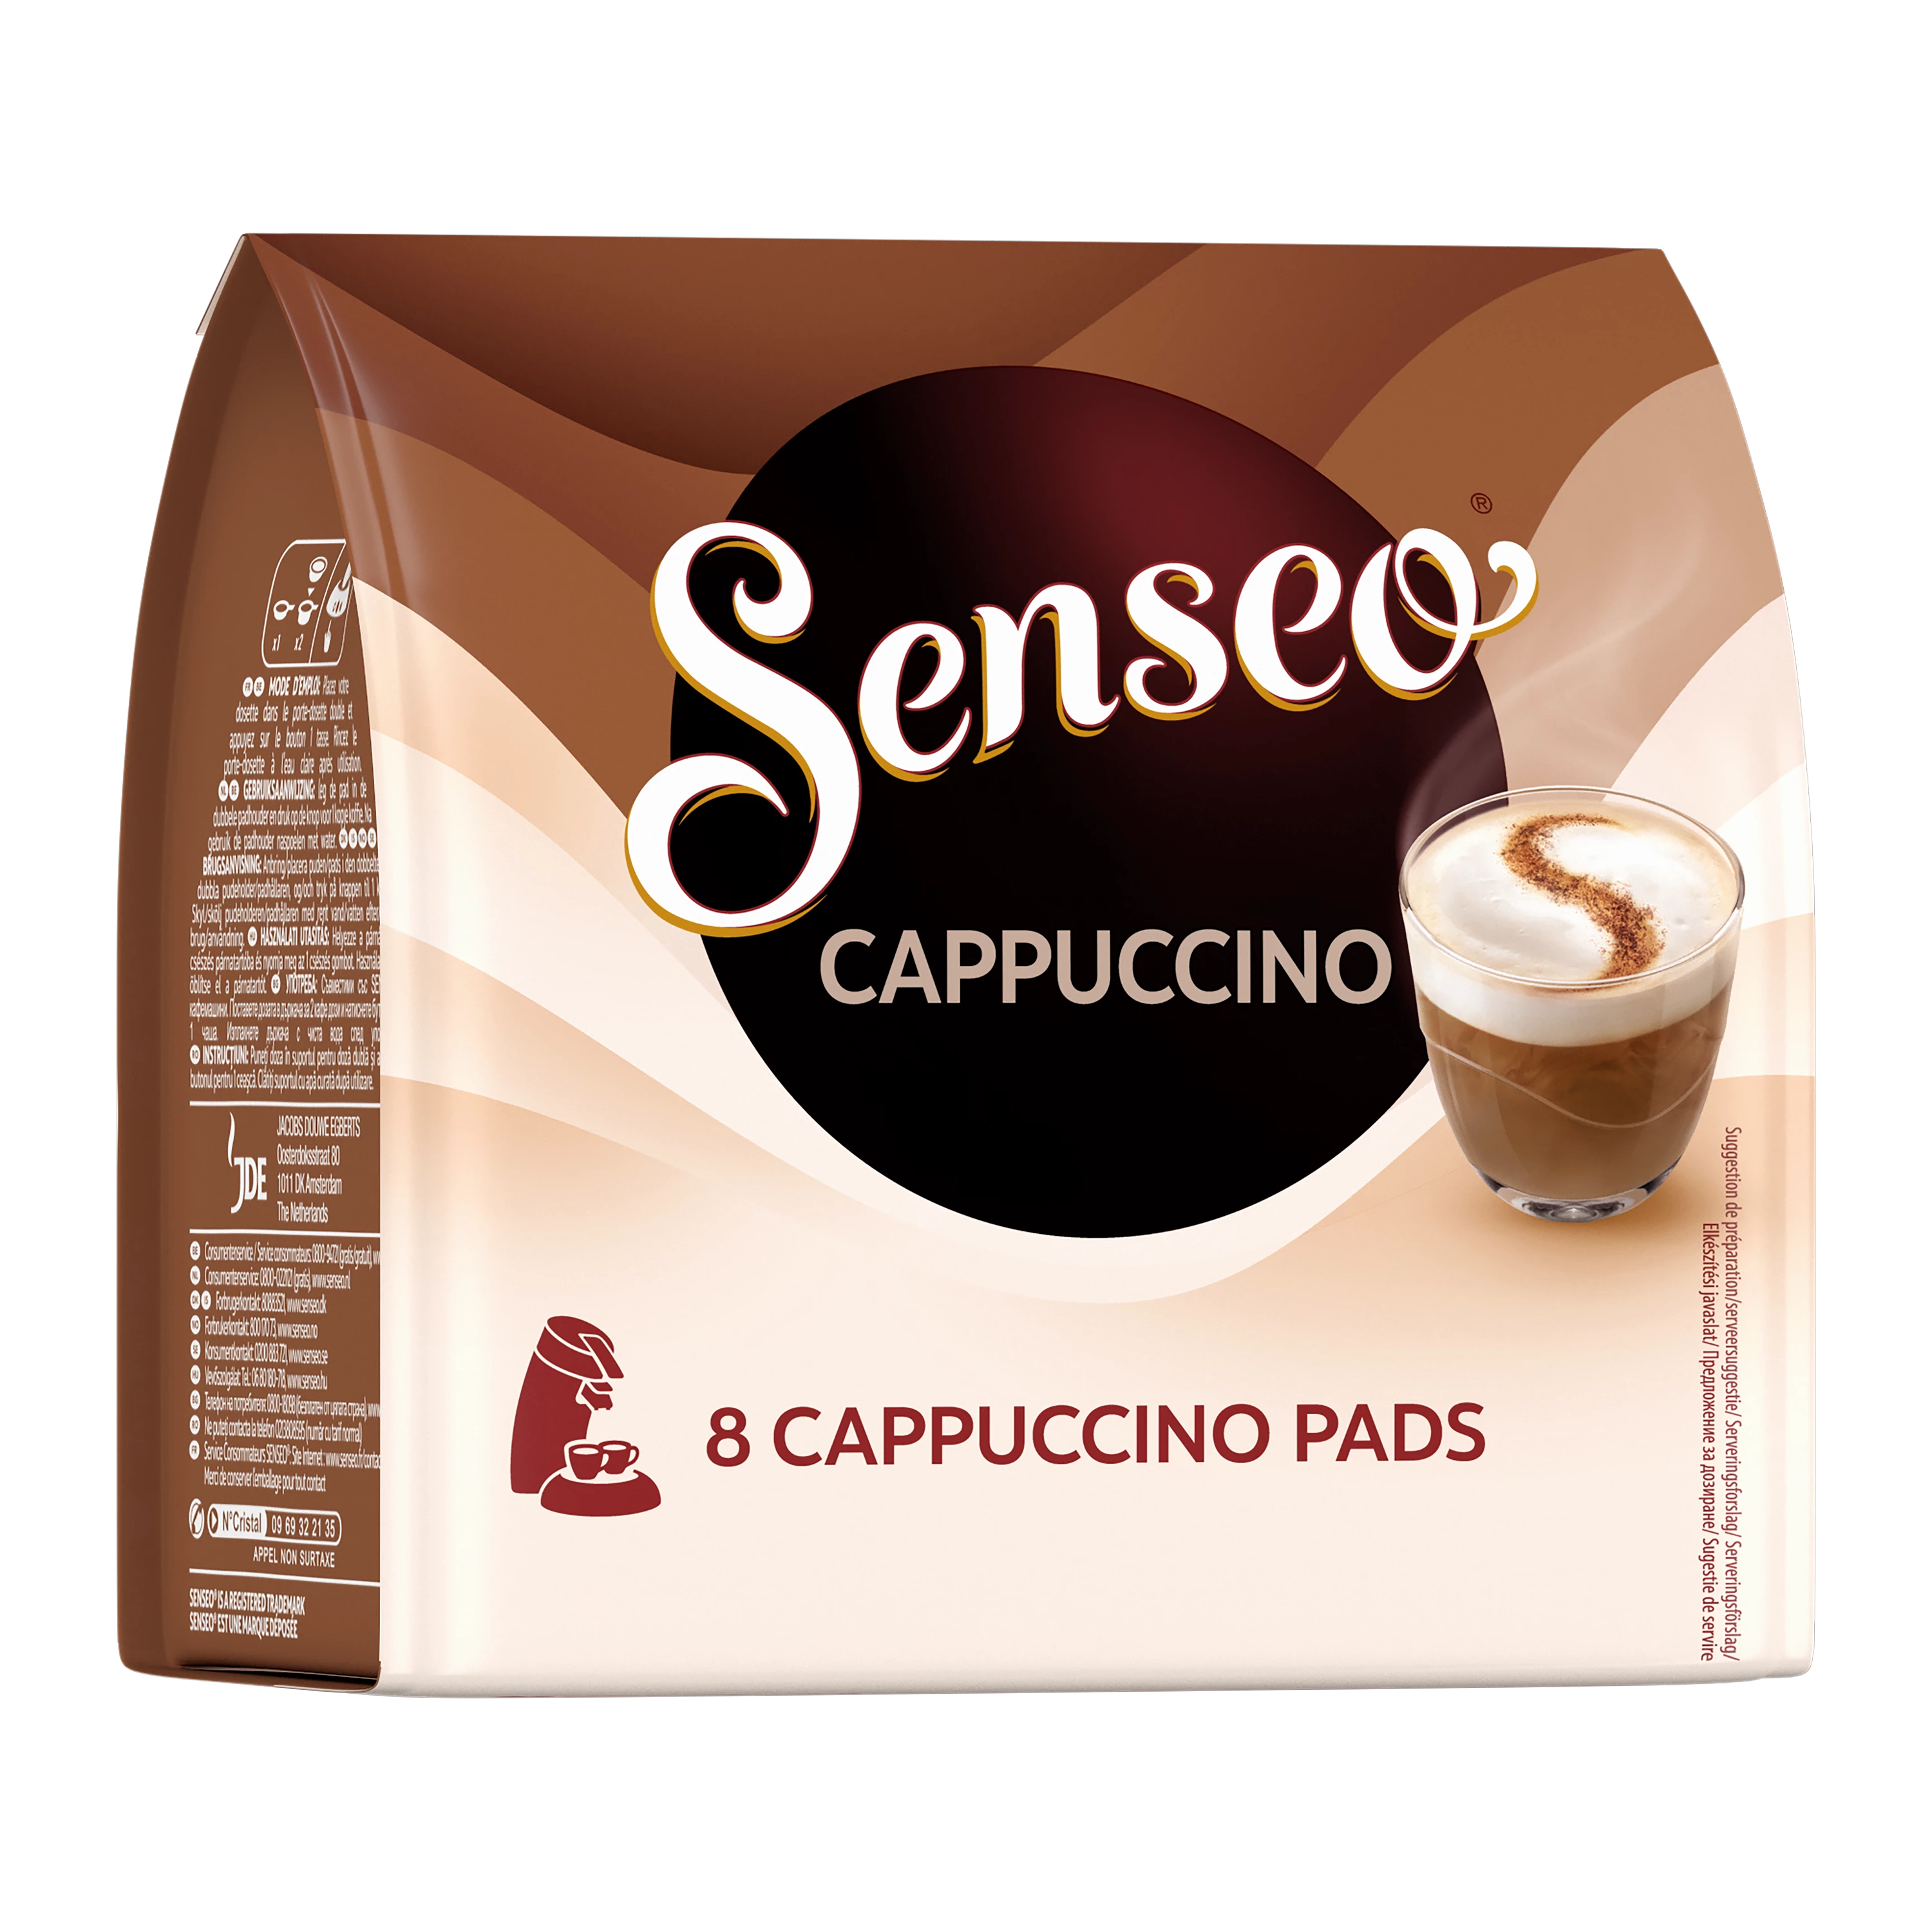 Senseo Classique Maxi pack - 60 dosettes pour Senseo à 7,29 €